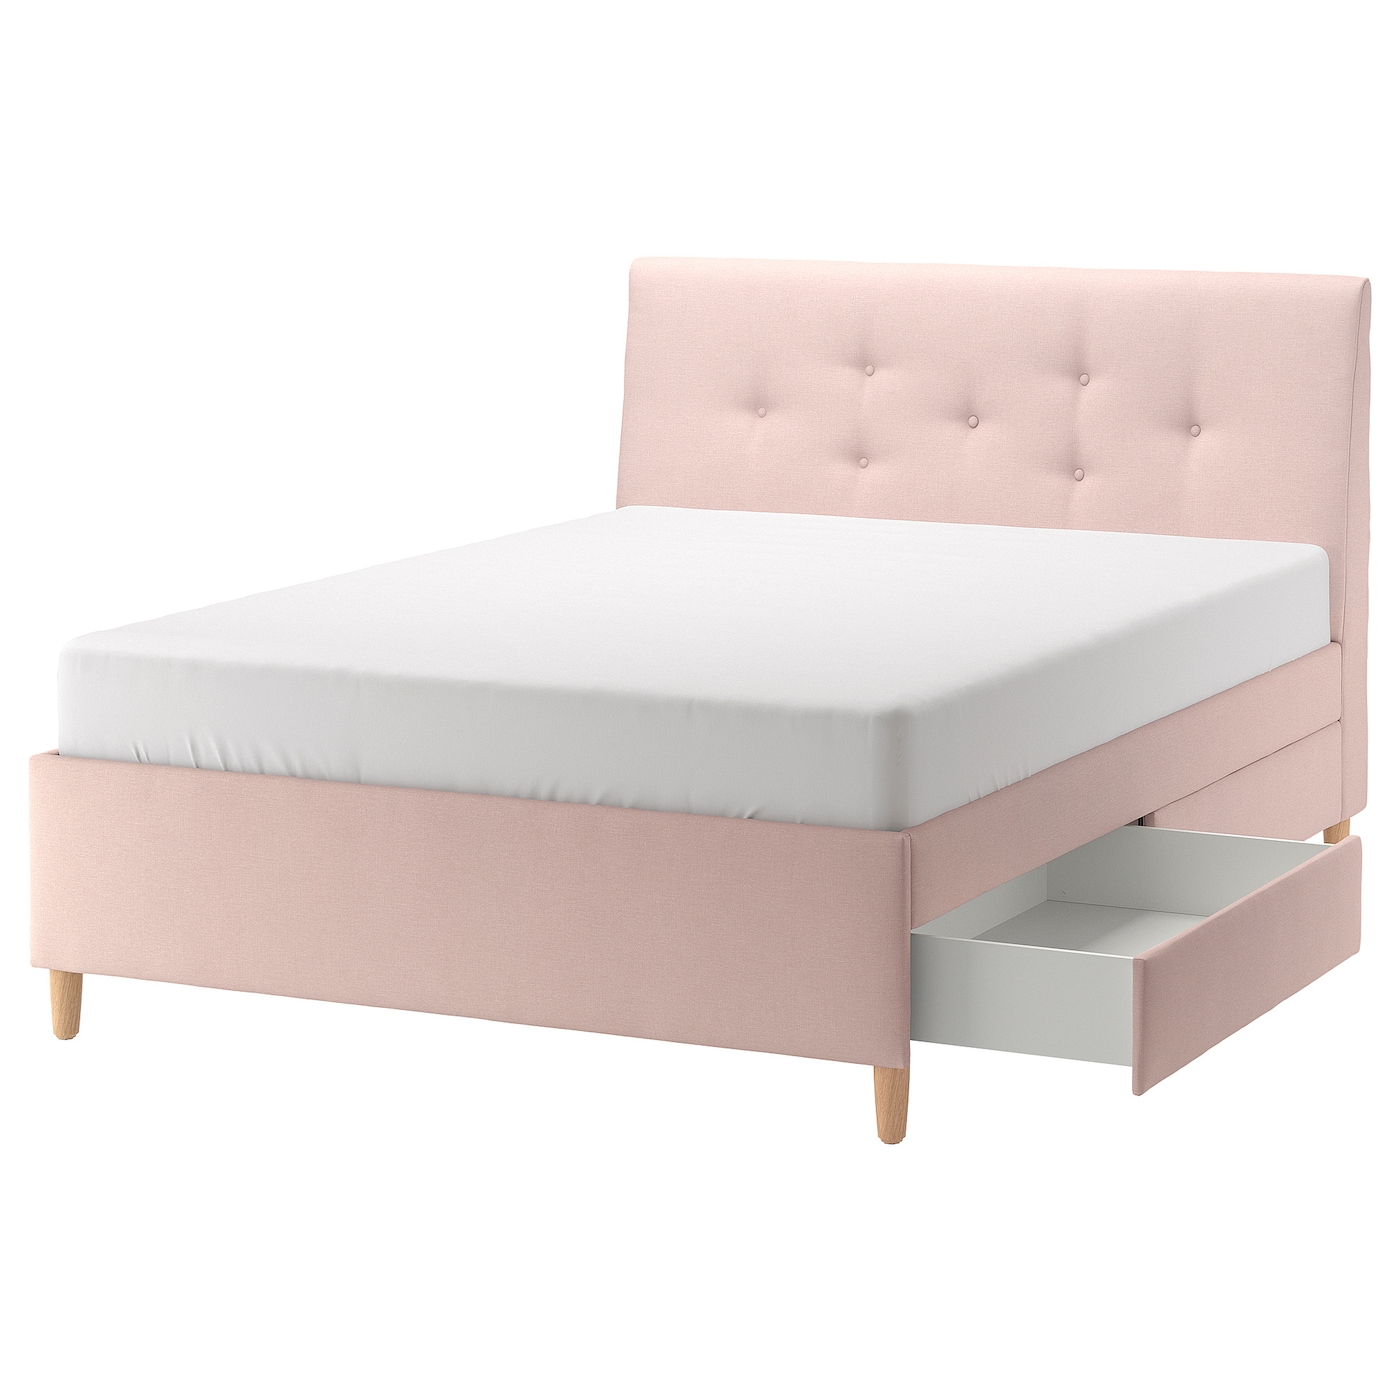 Кровать мягкая с ящиками - IKEA IDANÄS/IDANAS, 200х160 см, бледно розовая, ИДАНЭС ИКЕА